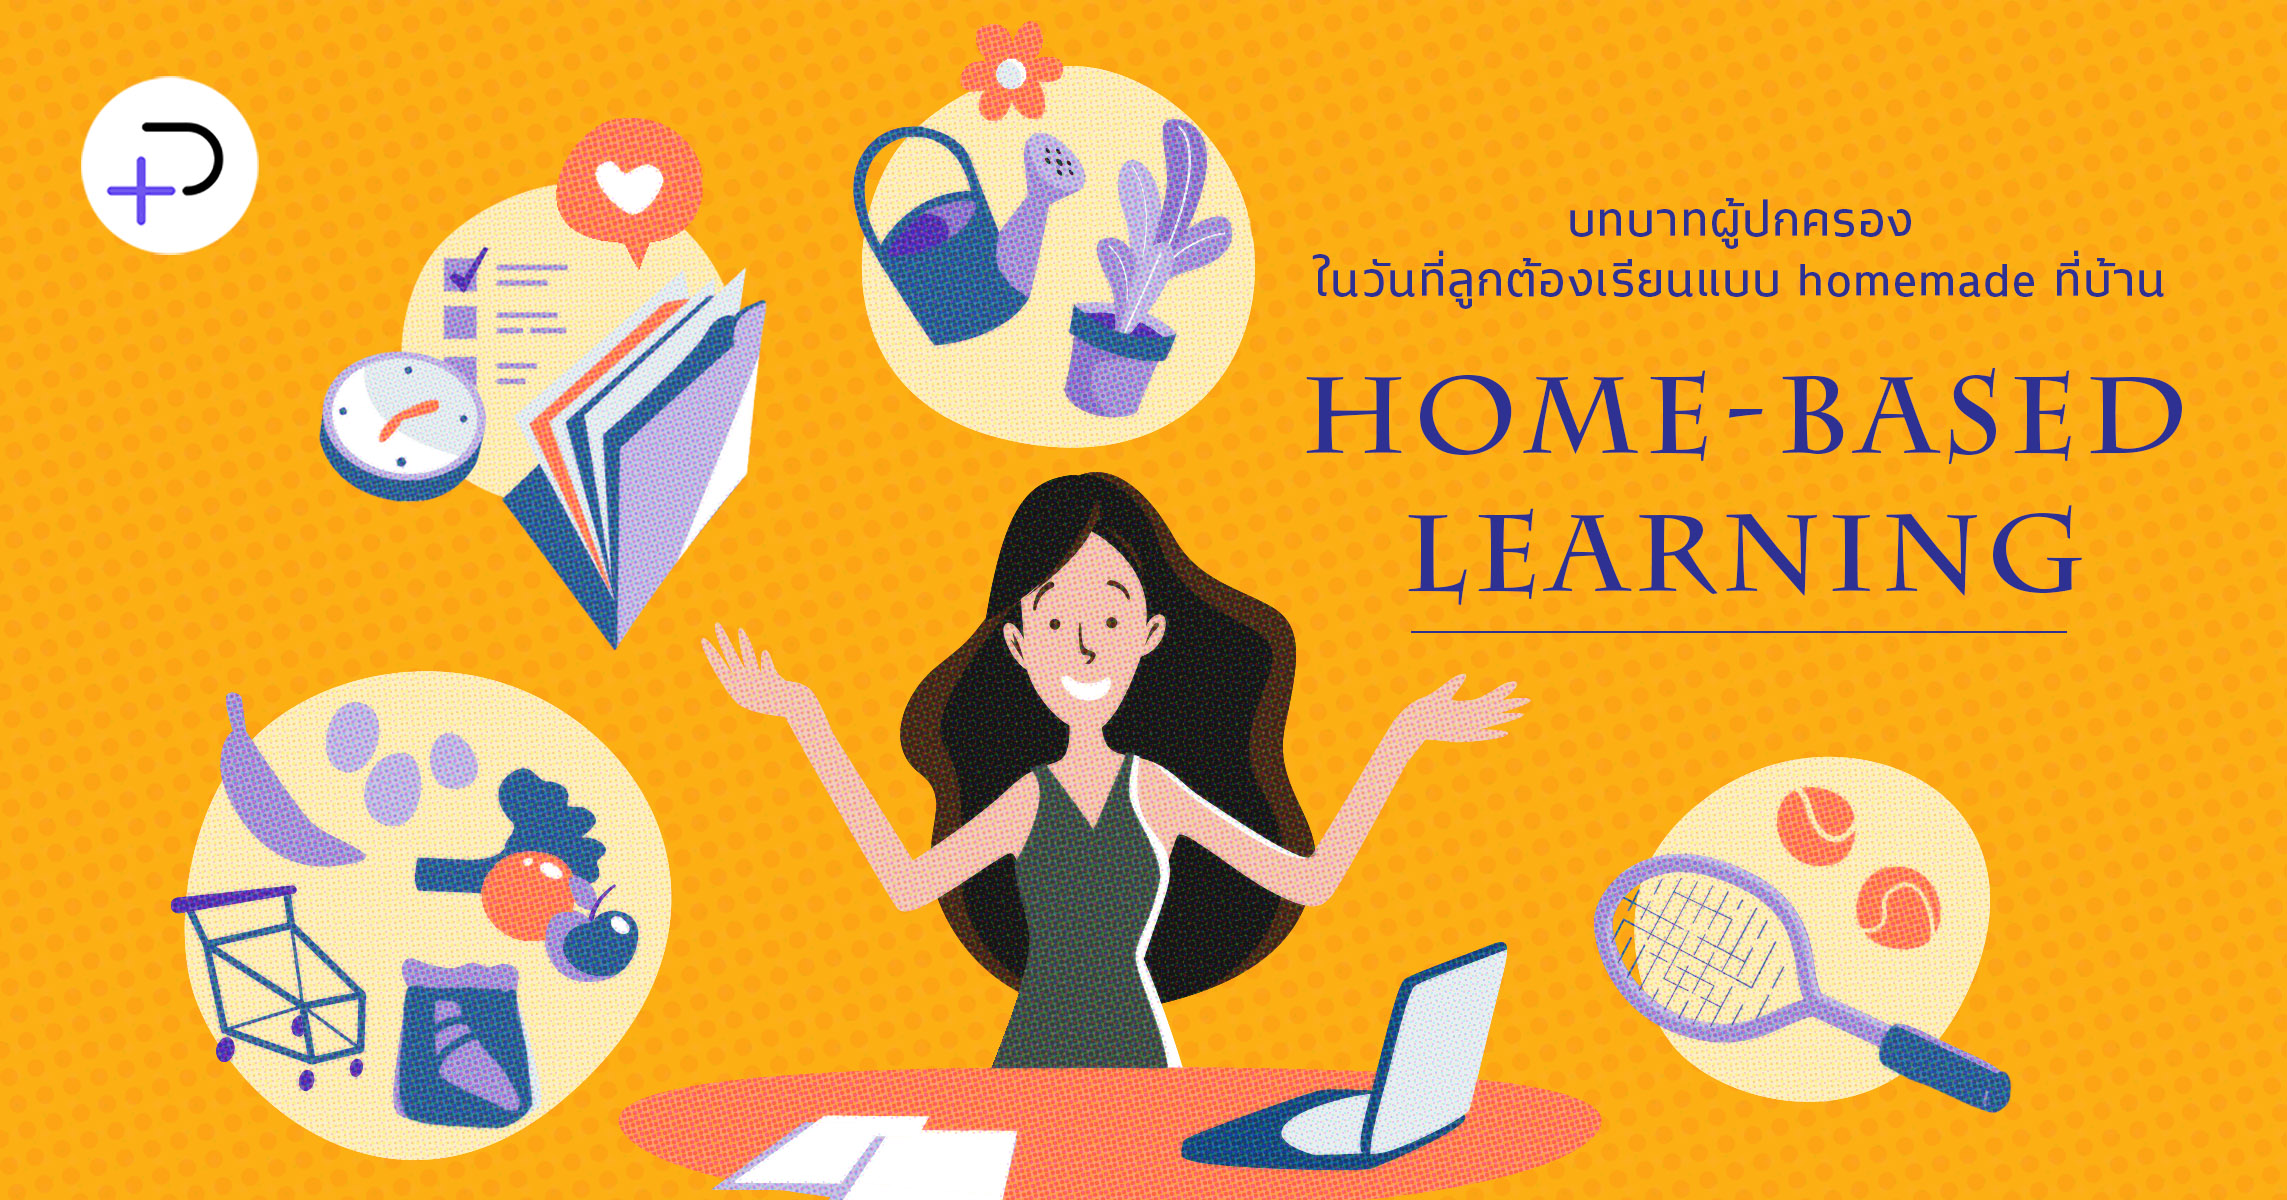 HOME-BASED LEARNING : บทบาทผู้ปกครองในวันที่ลูกต้องเรียนแบบ homemade